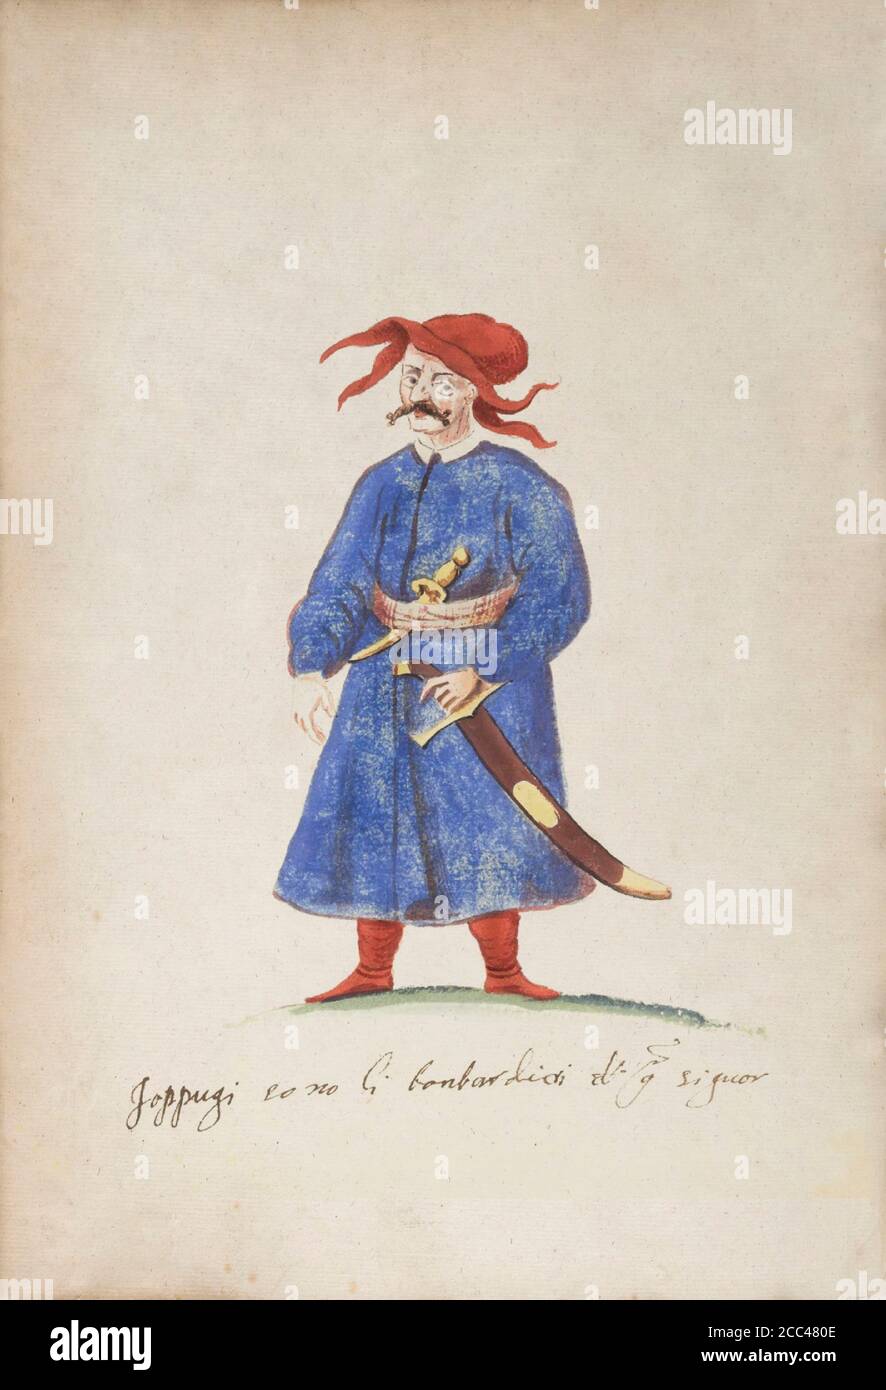 The history of Ottoman Empire. Turkish artilleryman - loppugi. 16th century Stock Photo